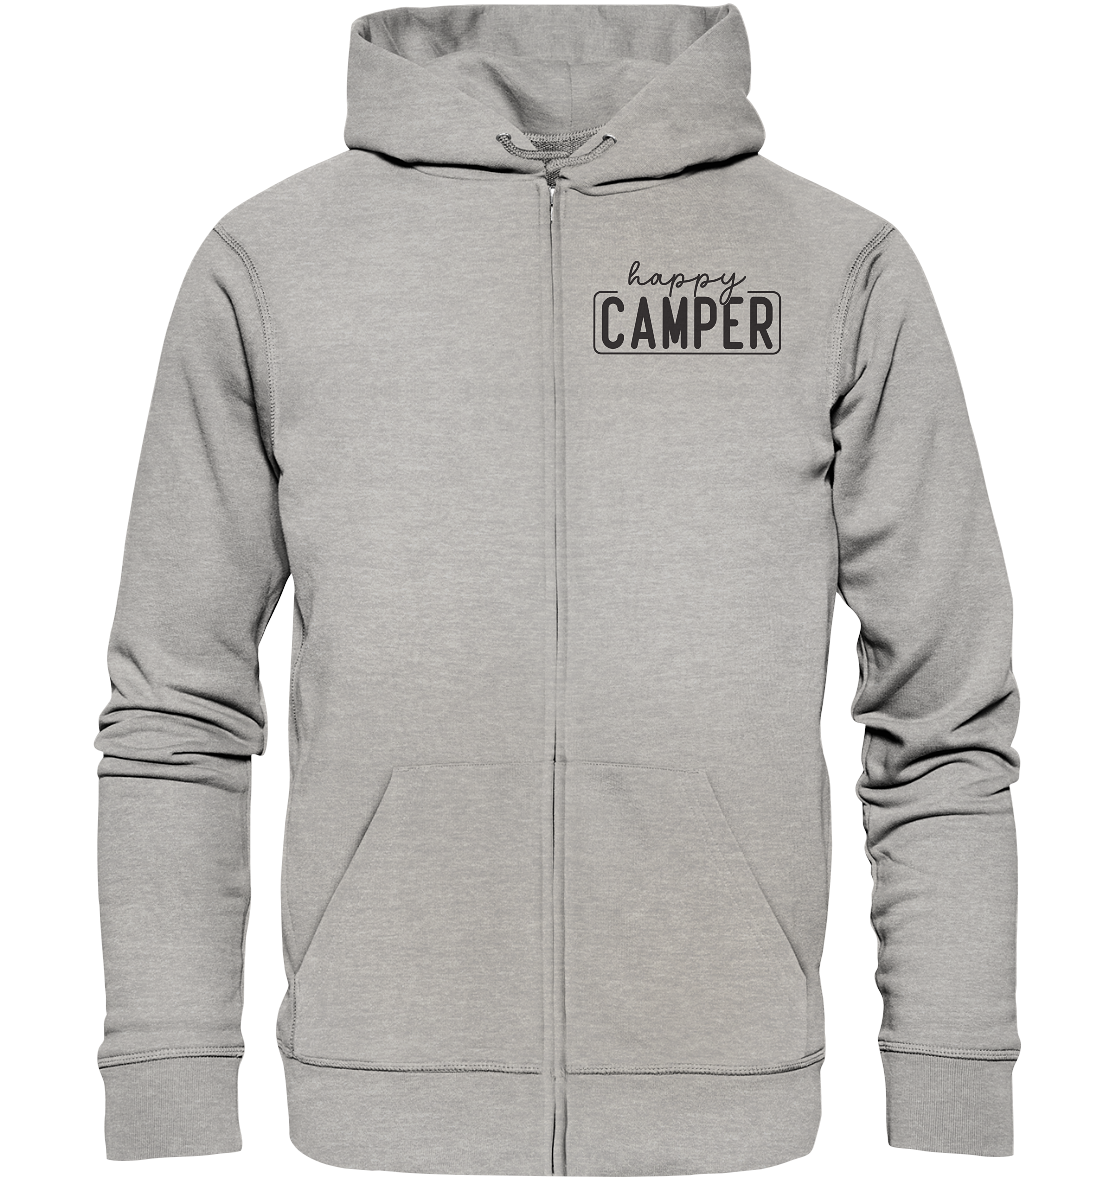 happy_camper - Organic Zipper